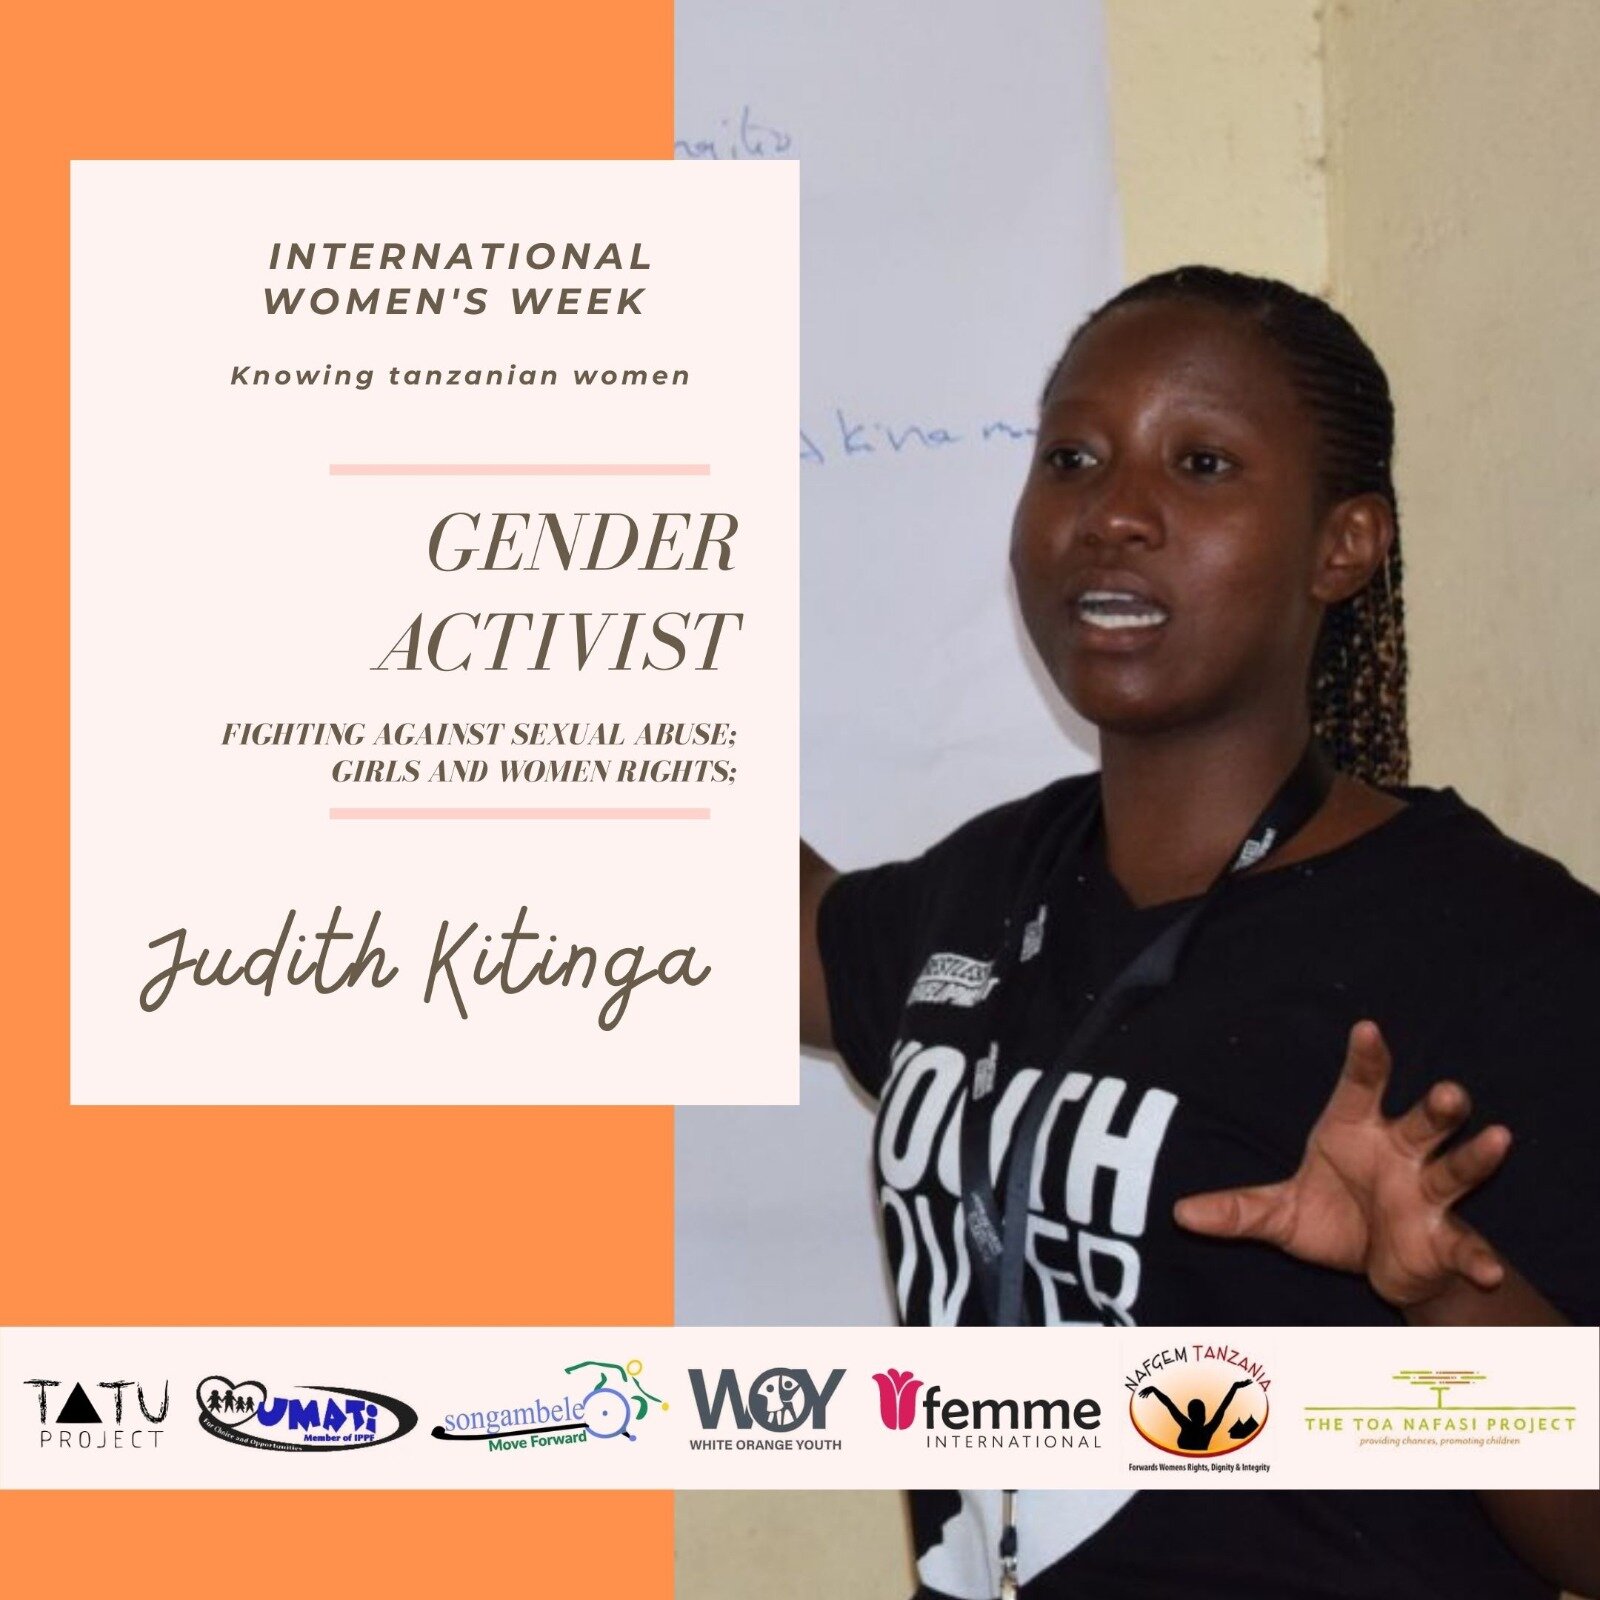 IWD gender activist 2.jpg